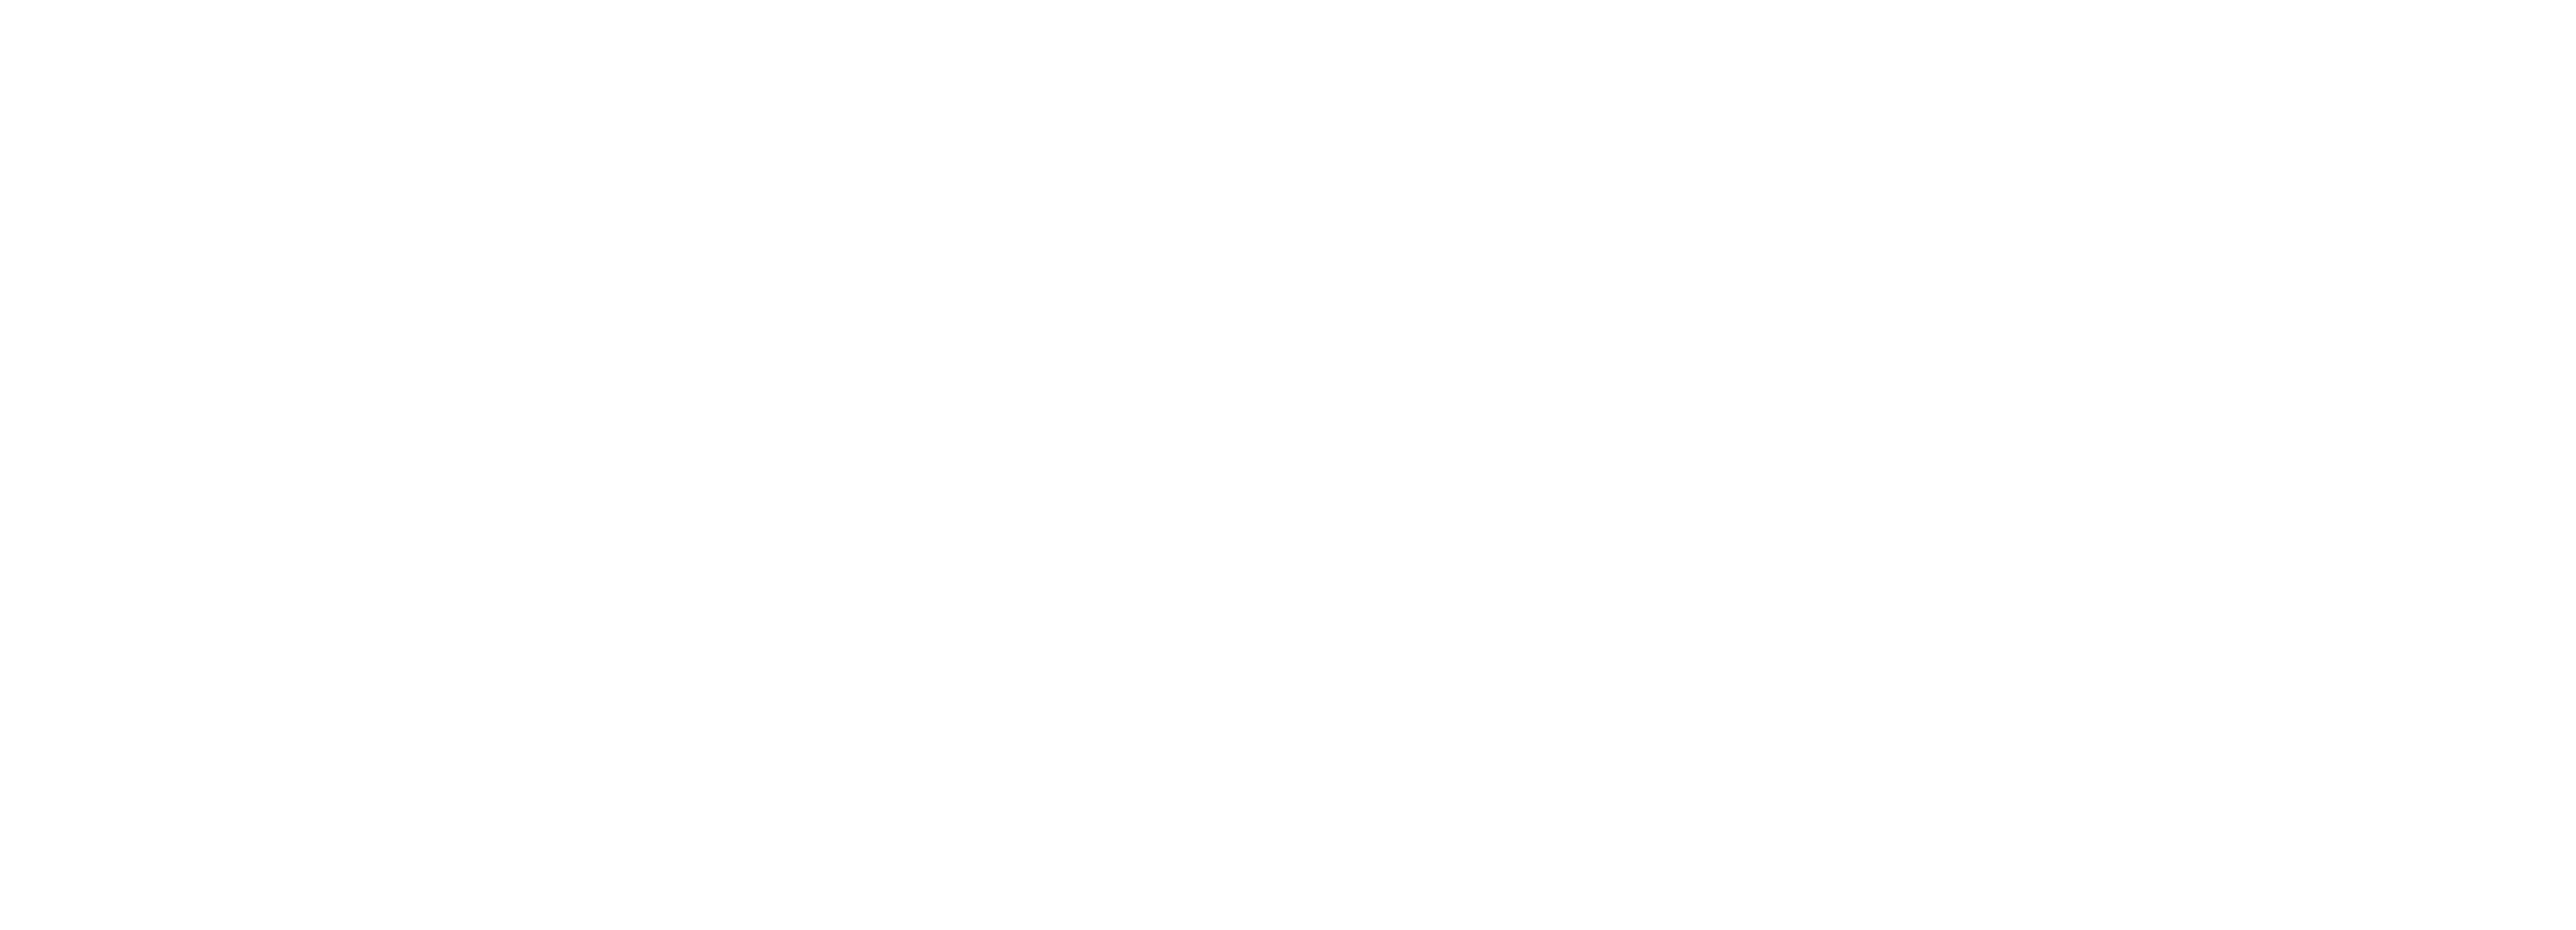 A Westinghouse Company